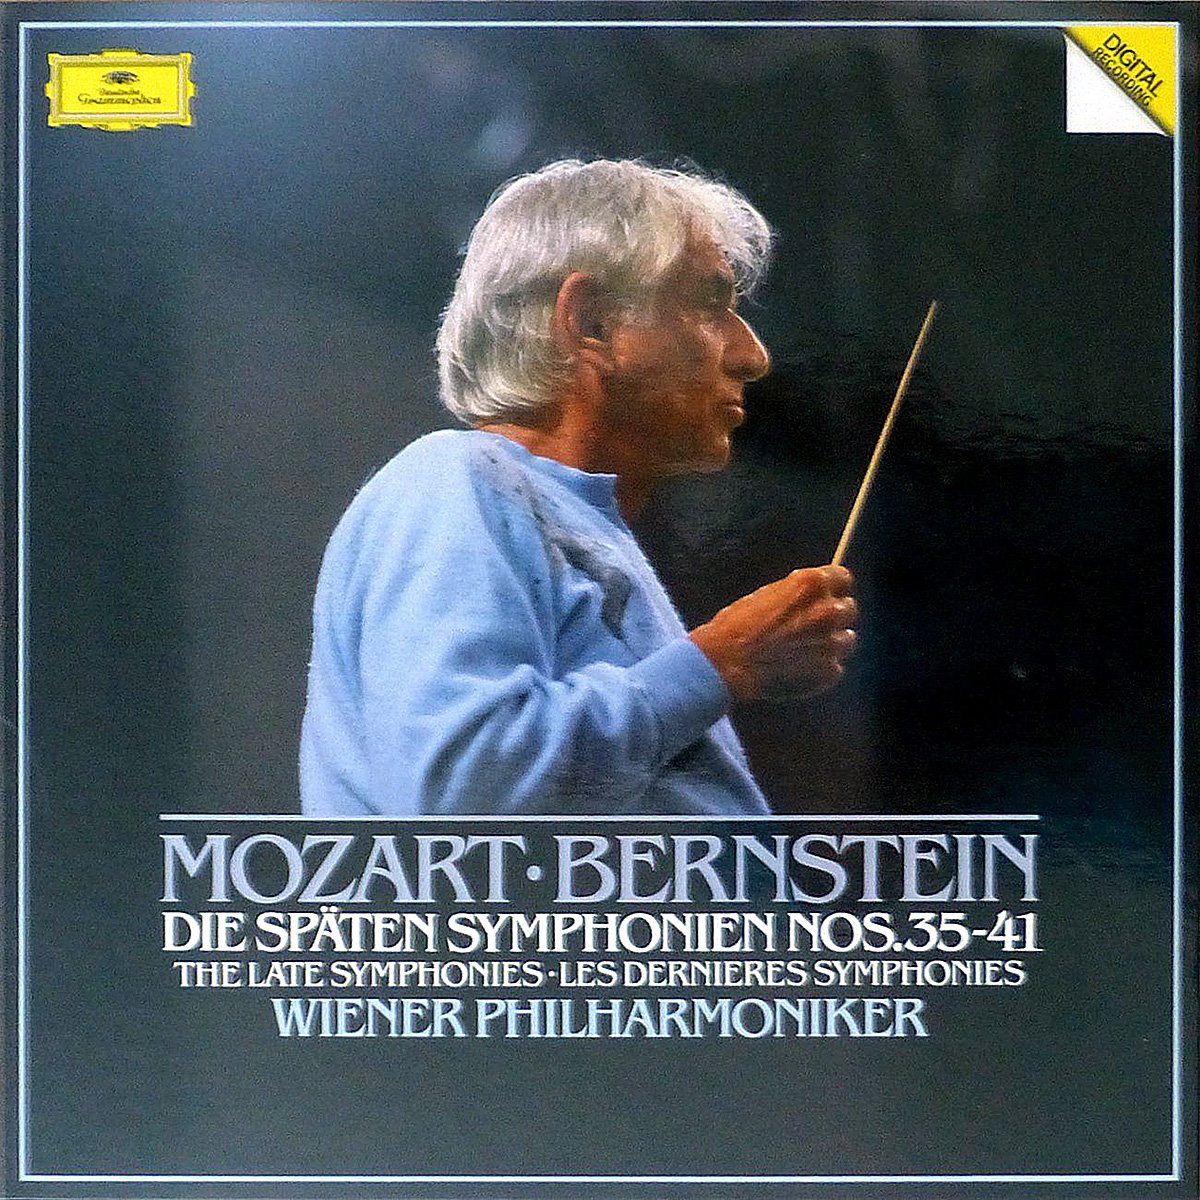 DGG 419 427 Mozart Spaten Symphonies Bernstein DGG Digital Aufnahme